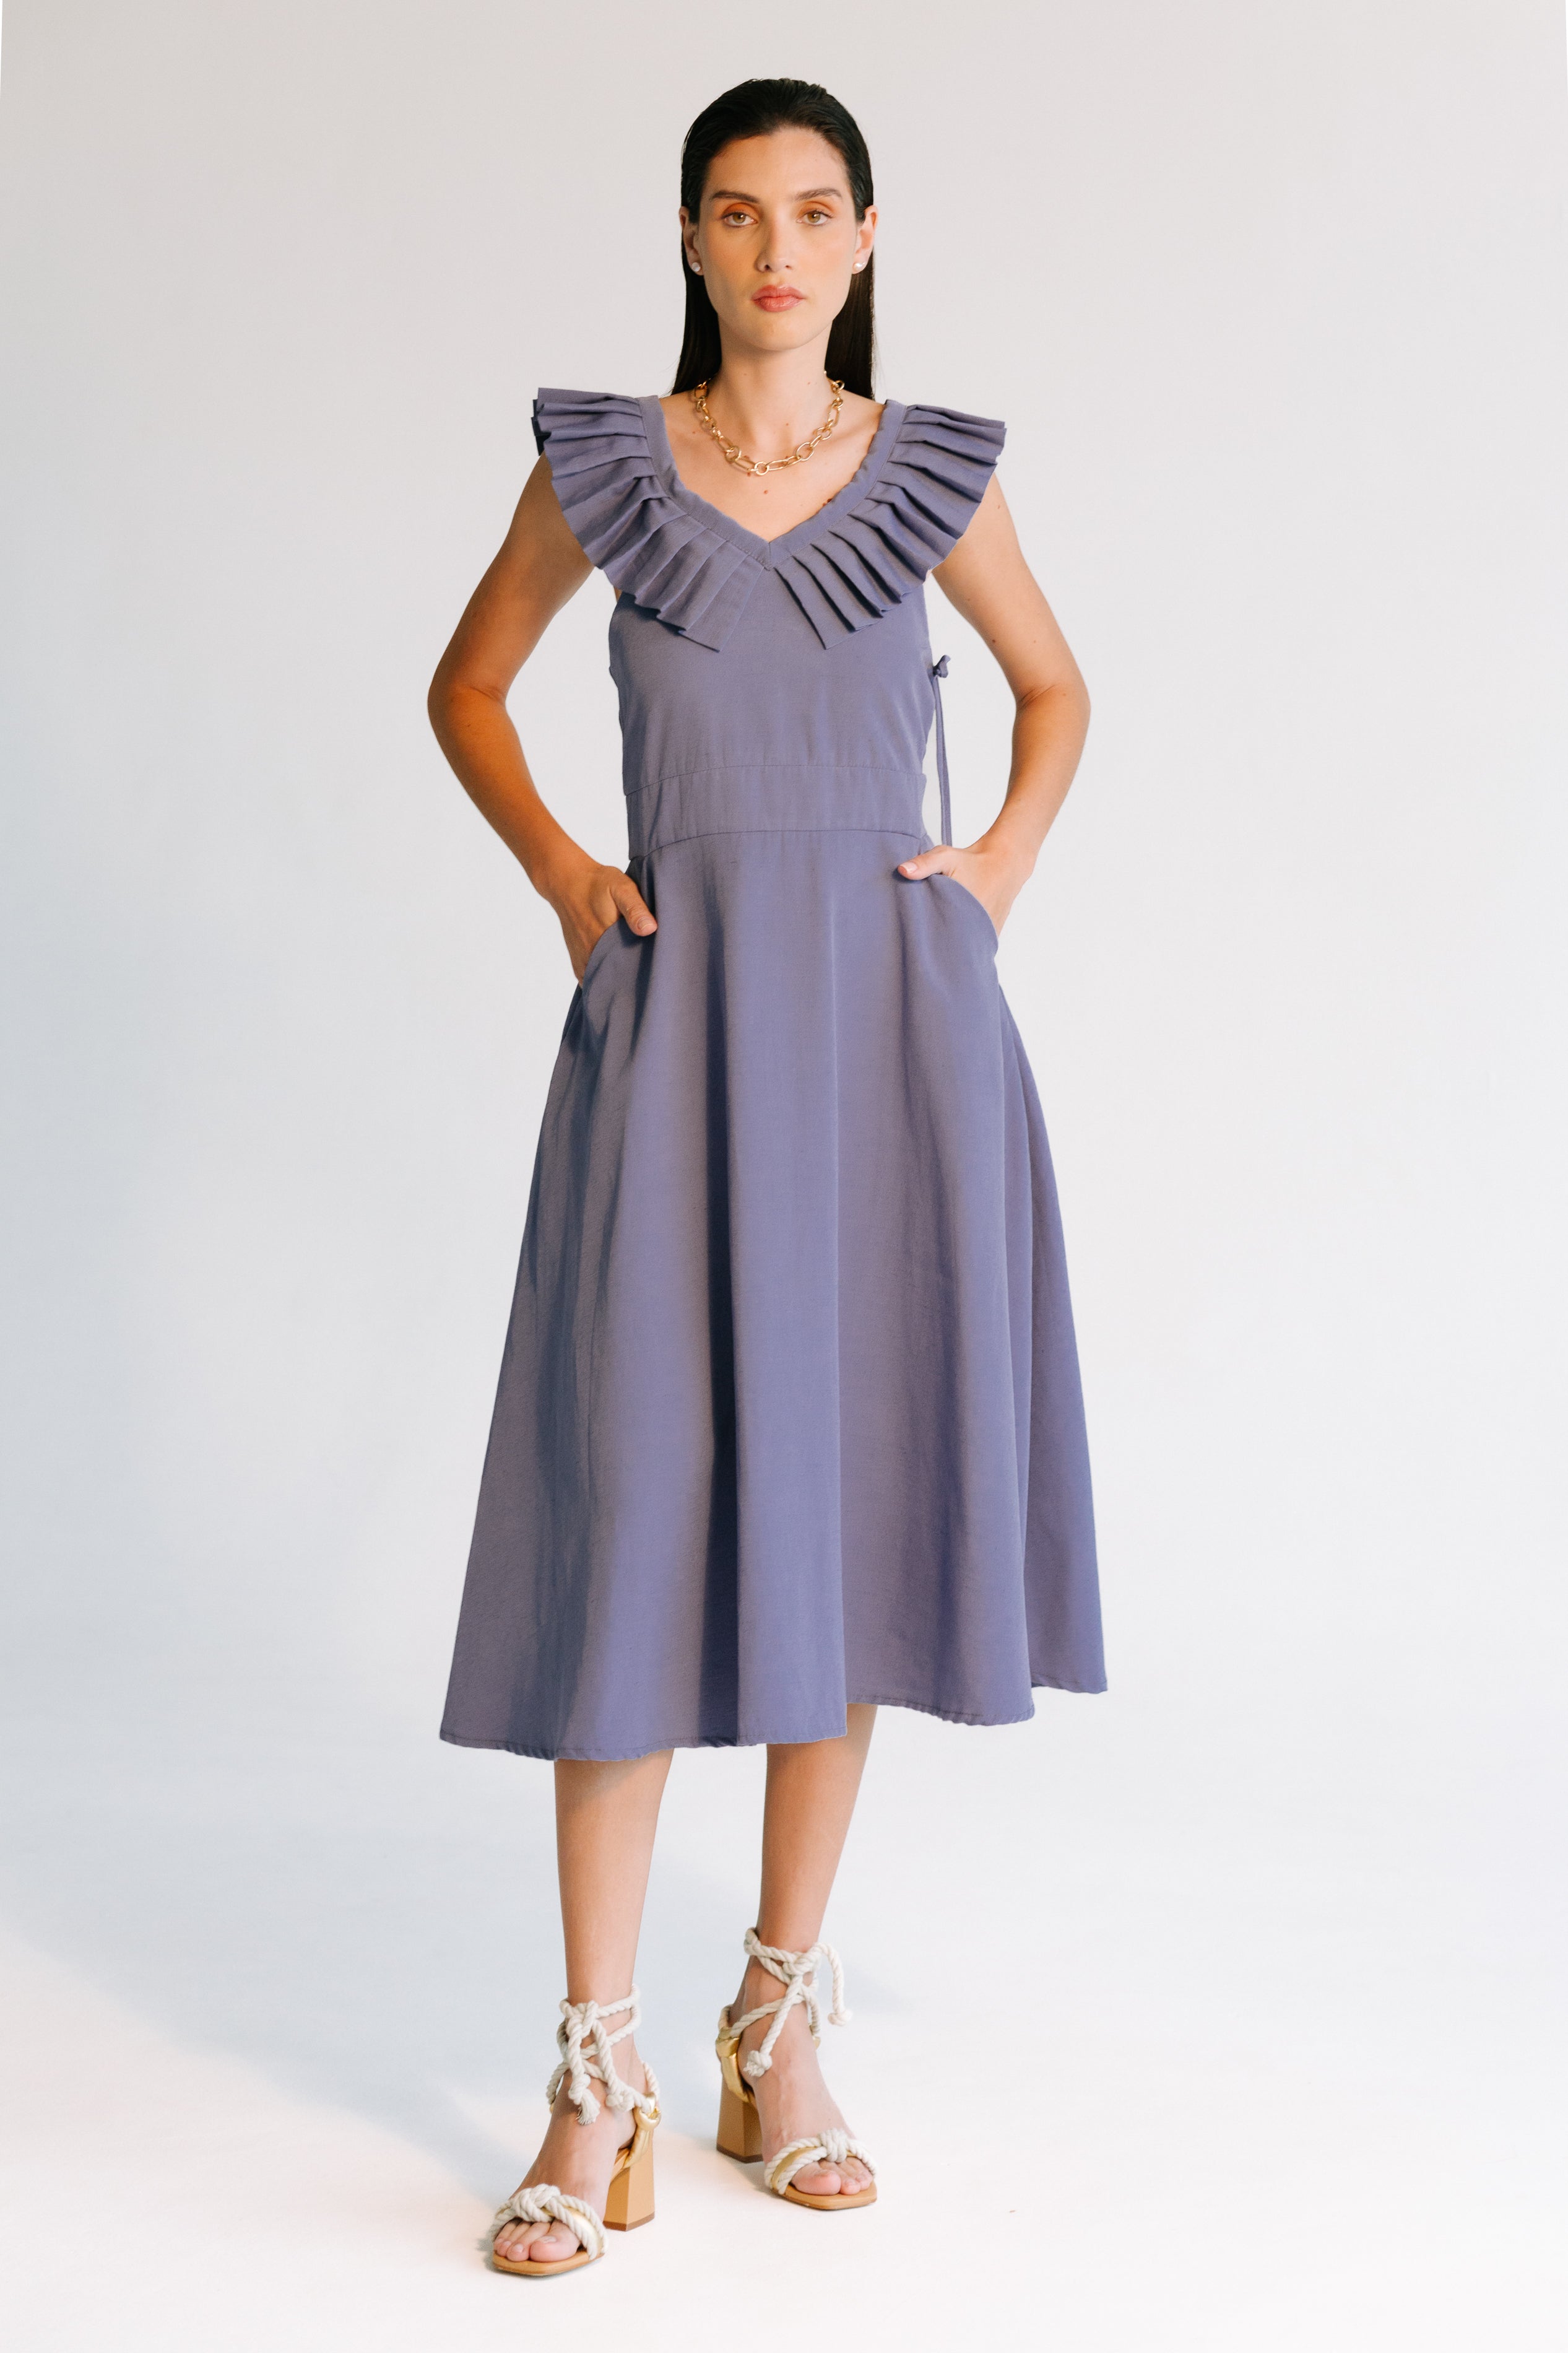 Yailyn Dress - Blue Dress TARBAY   